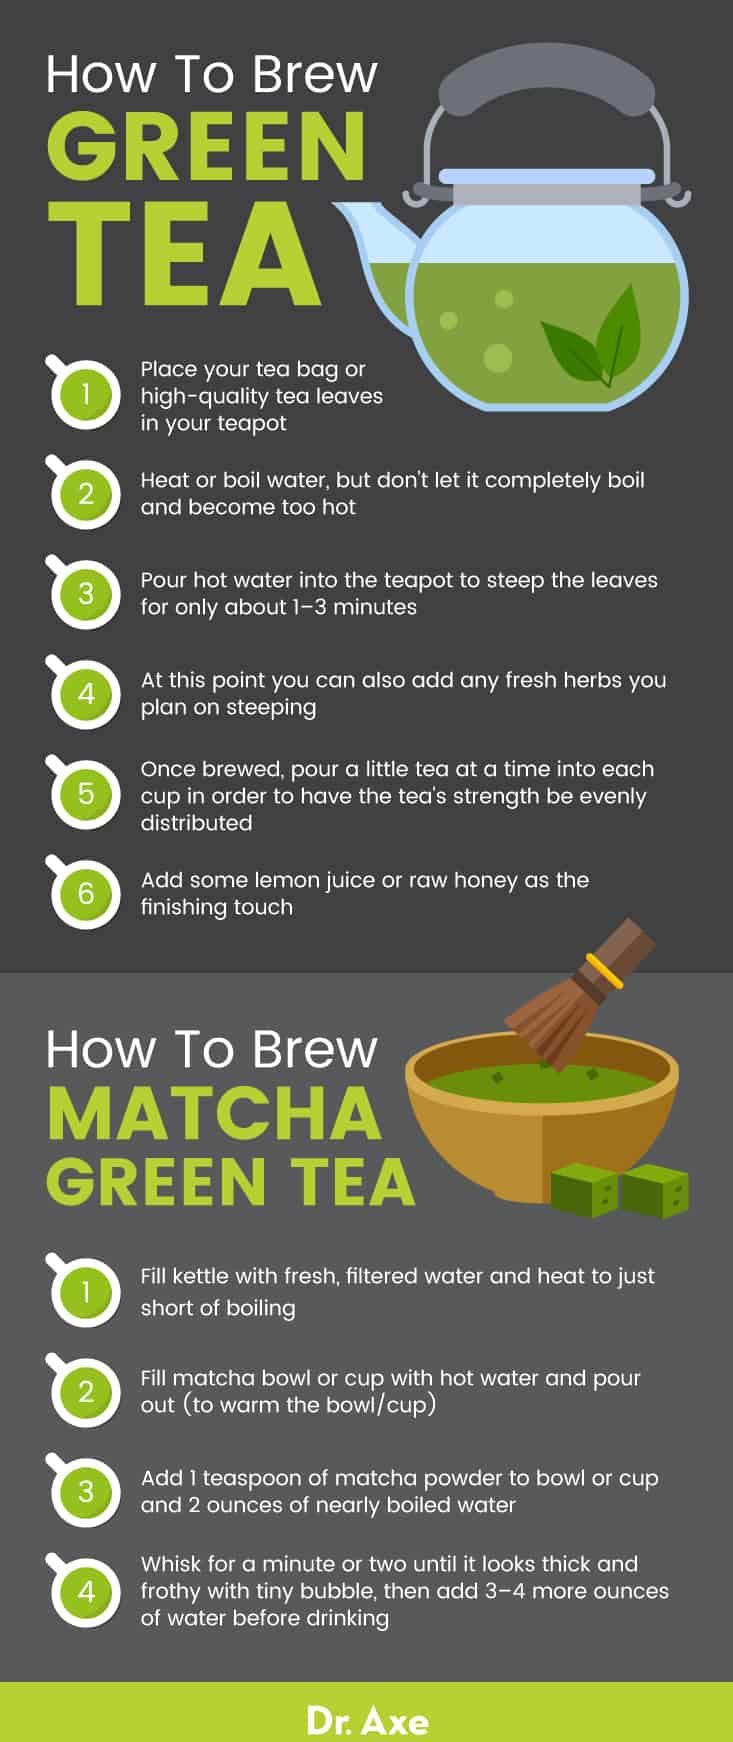 How to brew green tea - Dr. Axe